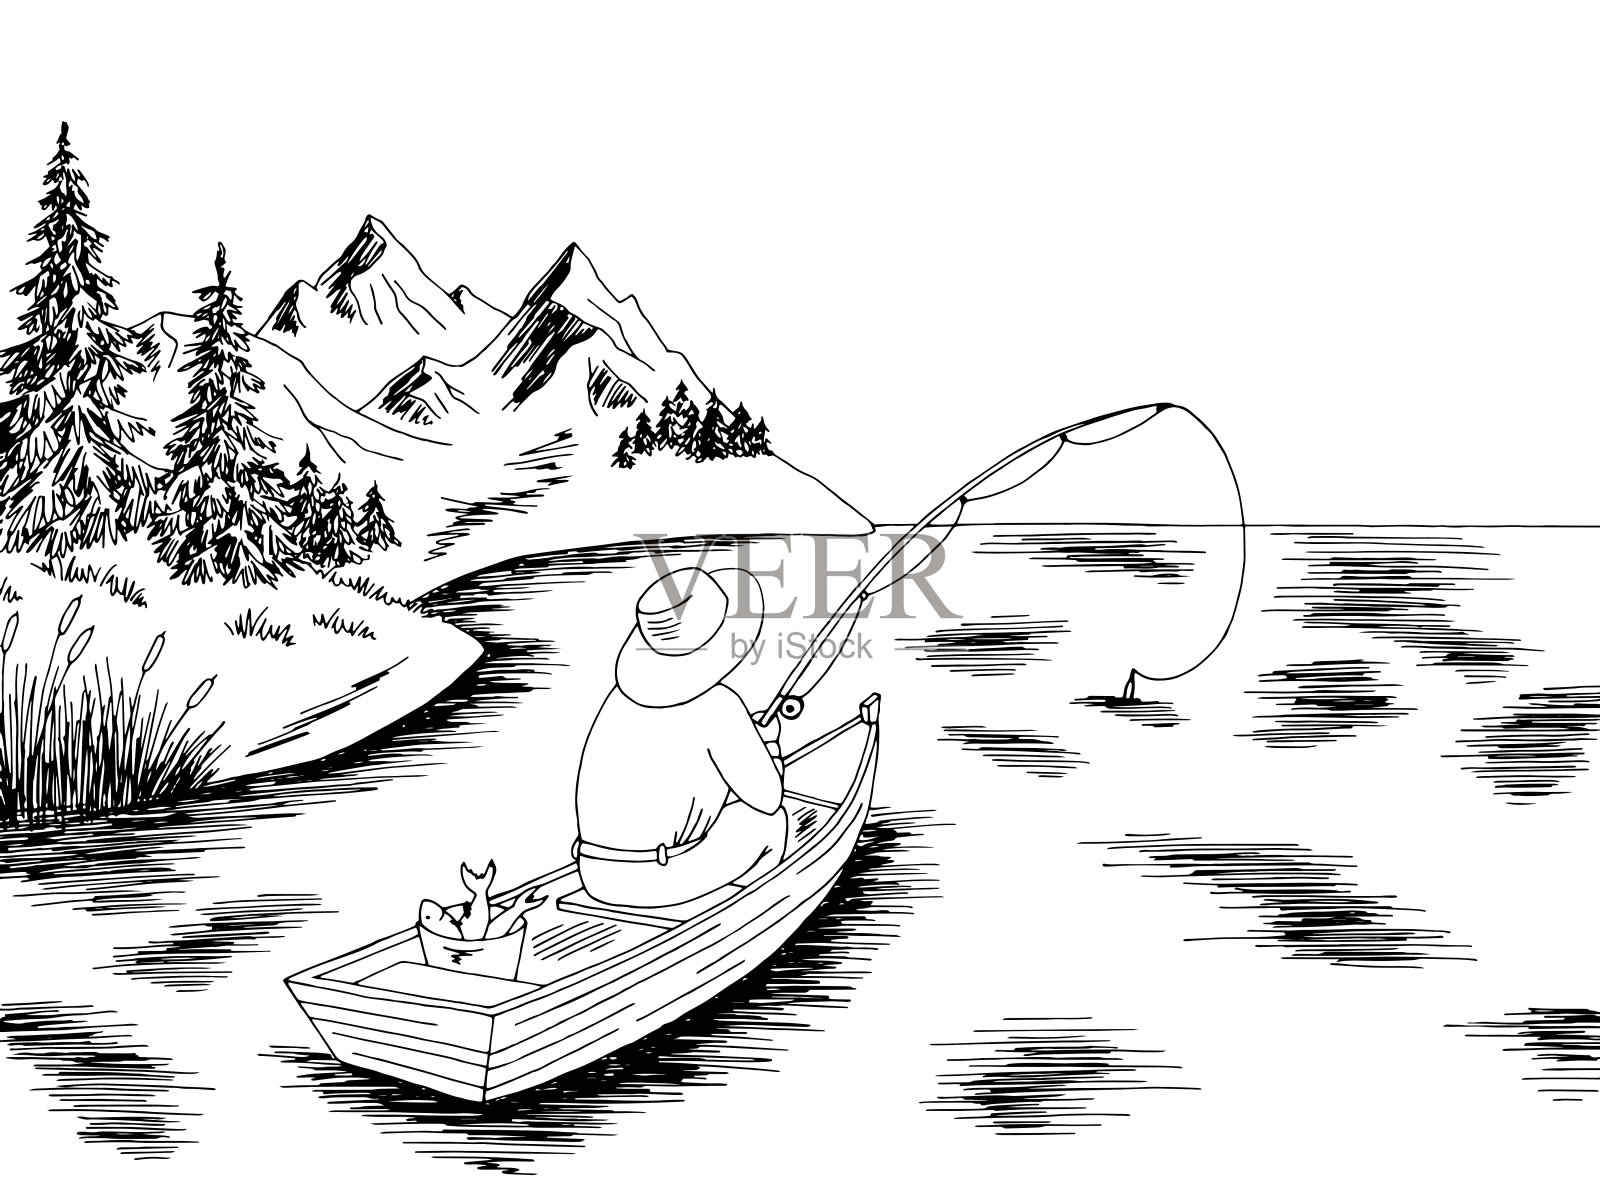 渔民在一艘船图形的黑白风景素描插图向量设计元素图片